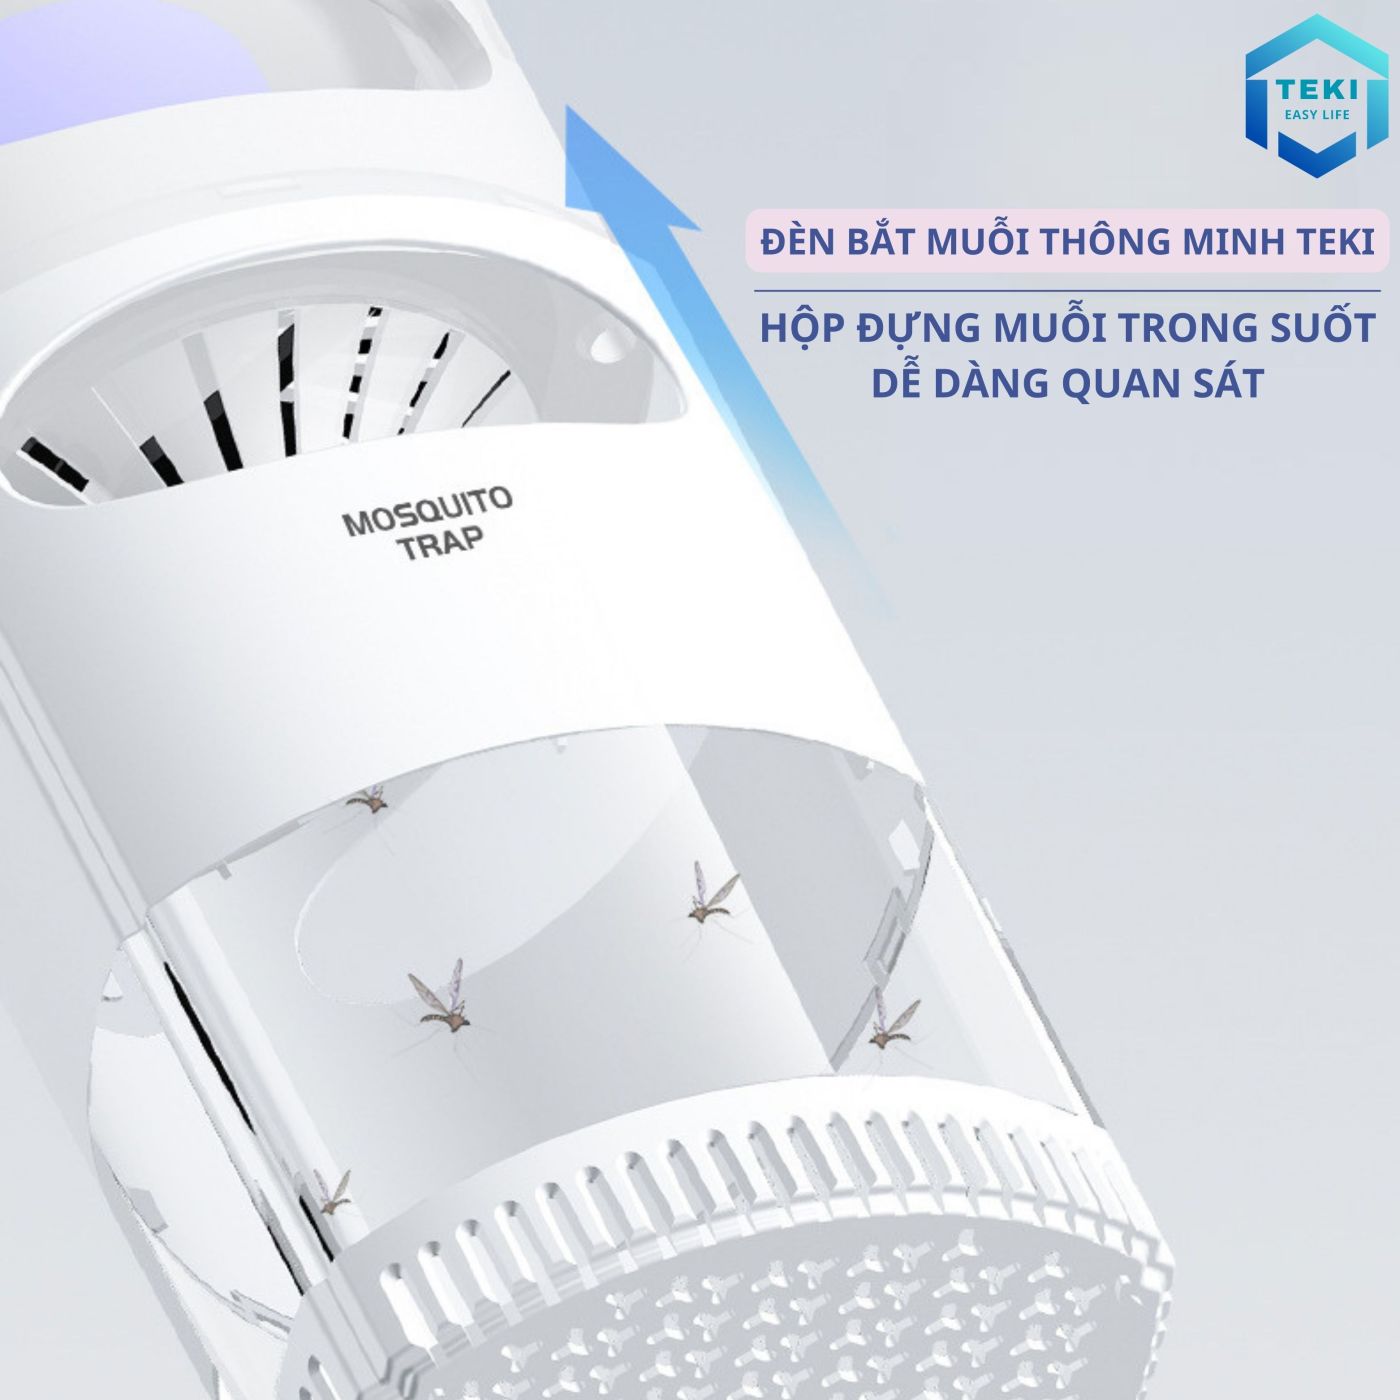 Đèn Bắt Muỗi Thông Minh TEKI - Máy bắt muỗi sử dụng quạt và ánh sáng UV, Kiêm Đèn Ngủ, Cổng Sạc USB